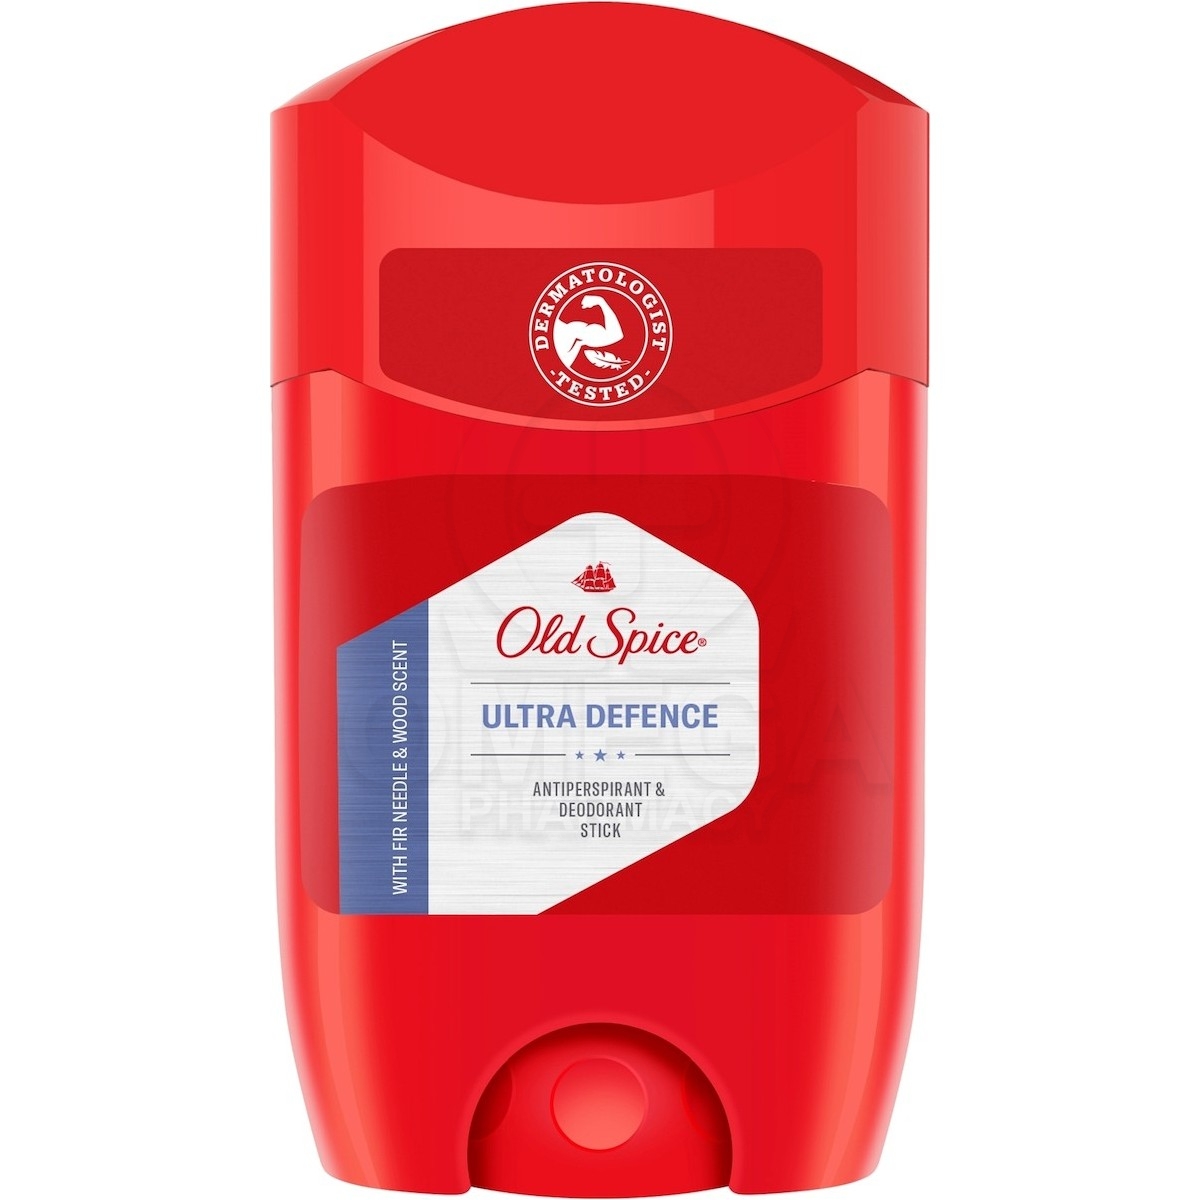 OLD SPICE Ultra Defence Antiperspirant & Deodorant Stick Ανδρικό  Αντιιδρωτικό Αποσμητικό Στικ 50ml